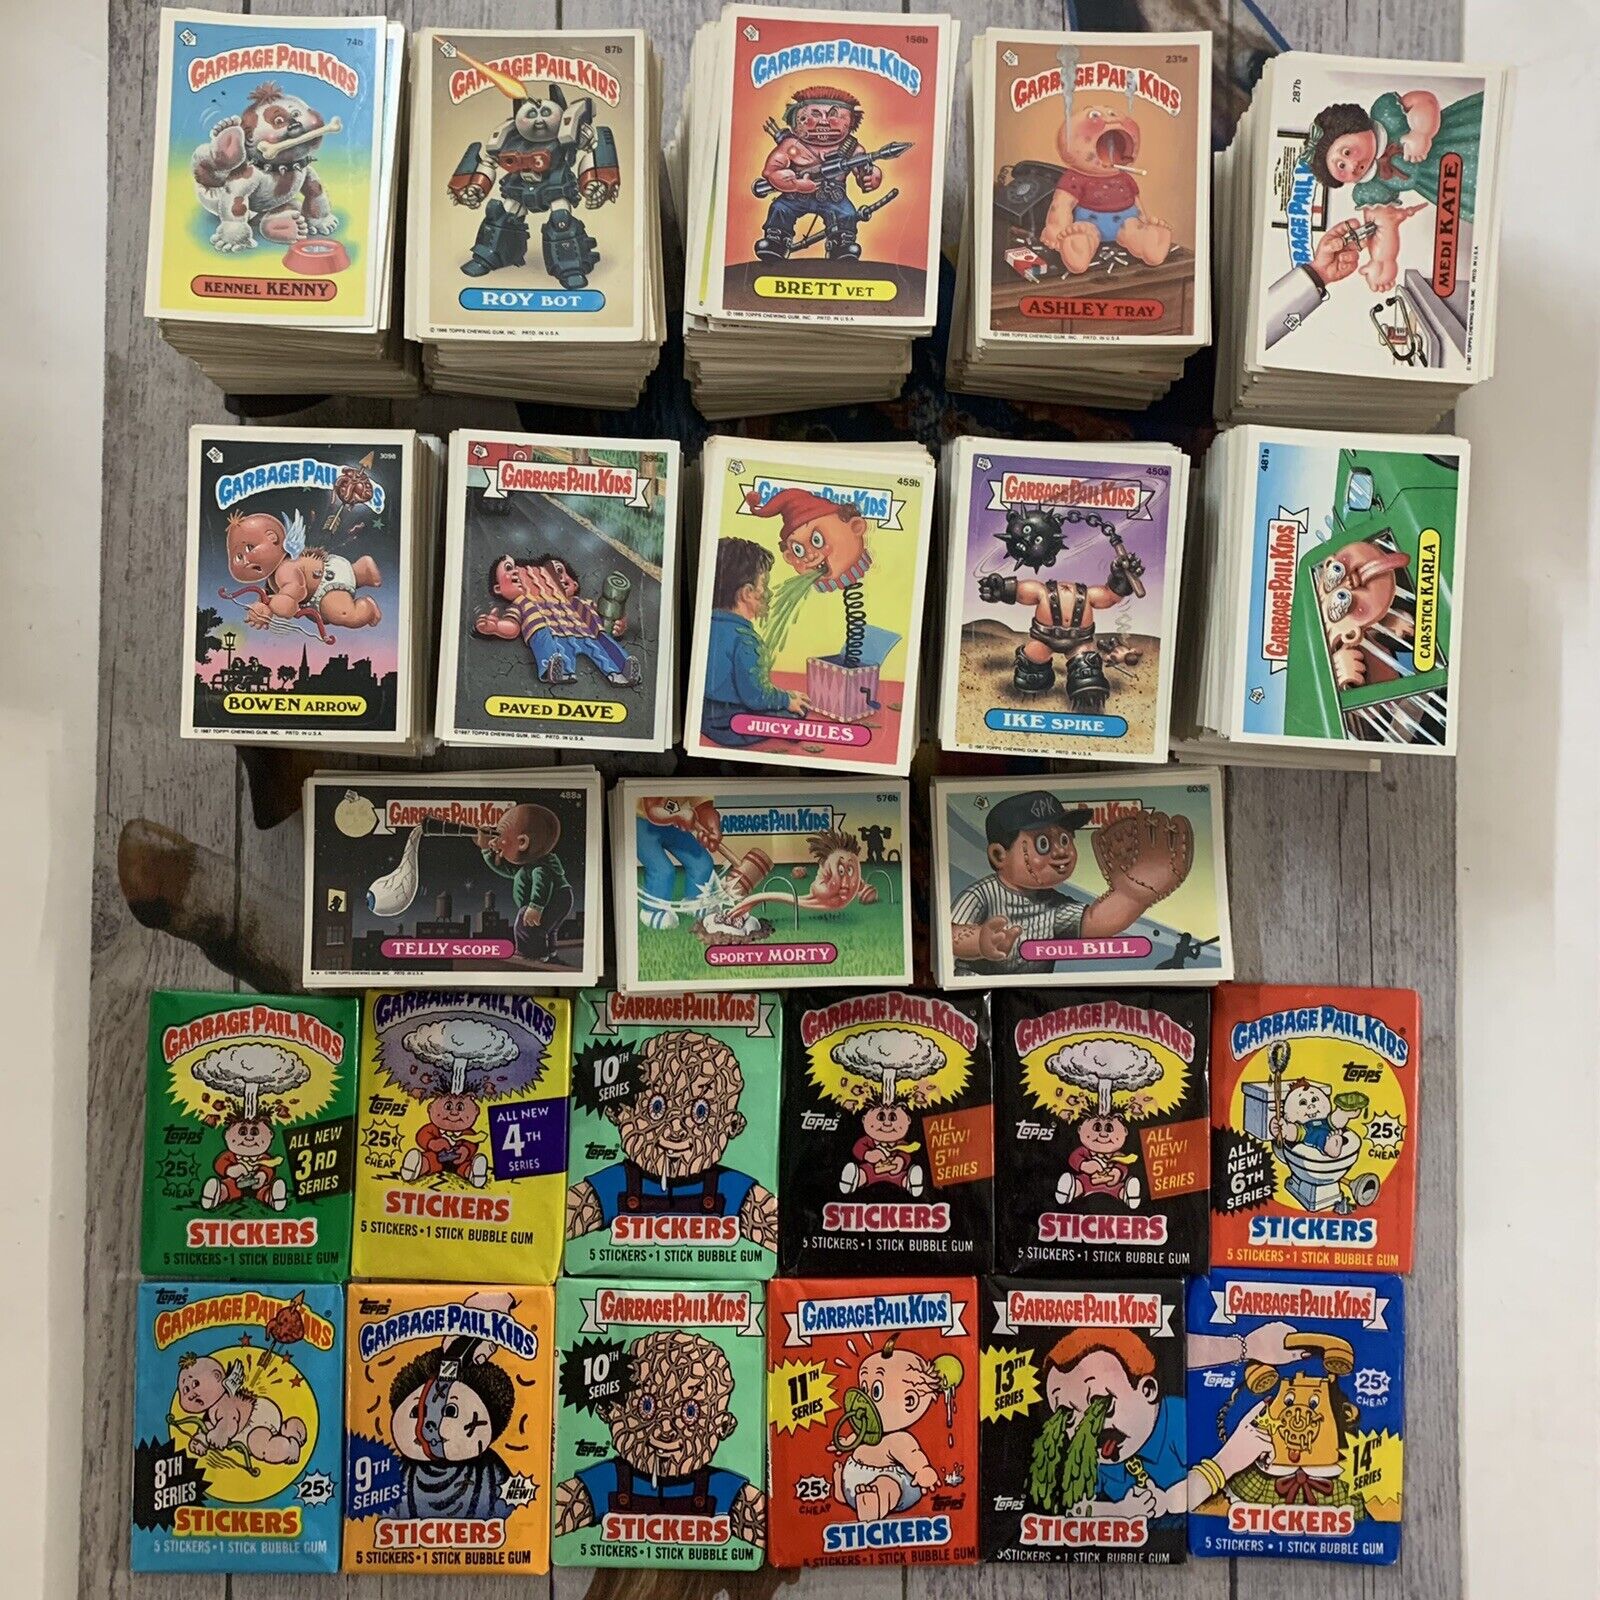 GPK Garbage Pail Kids Vintage Original Series Only 50 Card Grab Bag Plus Pack